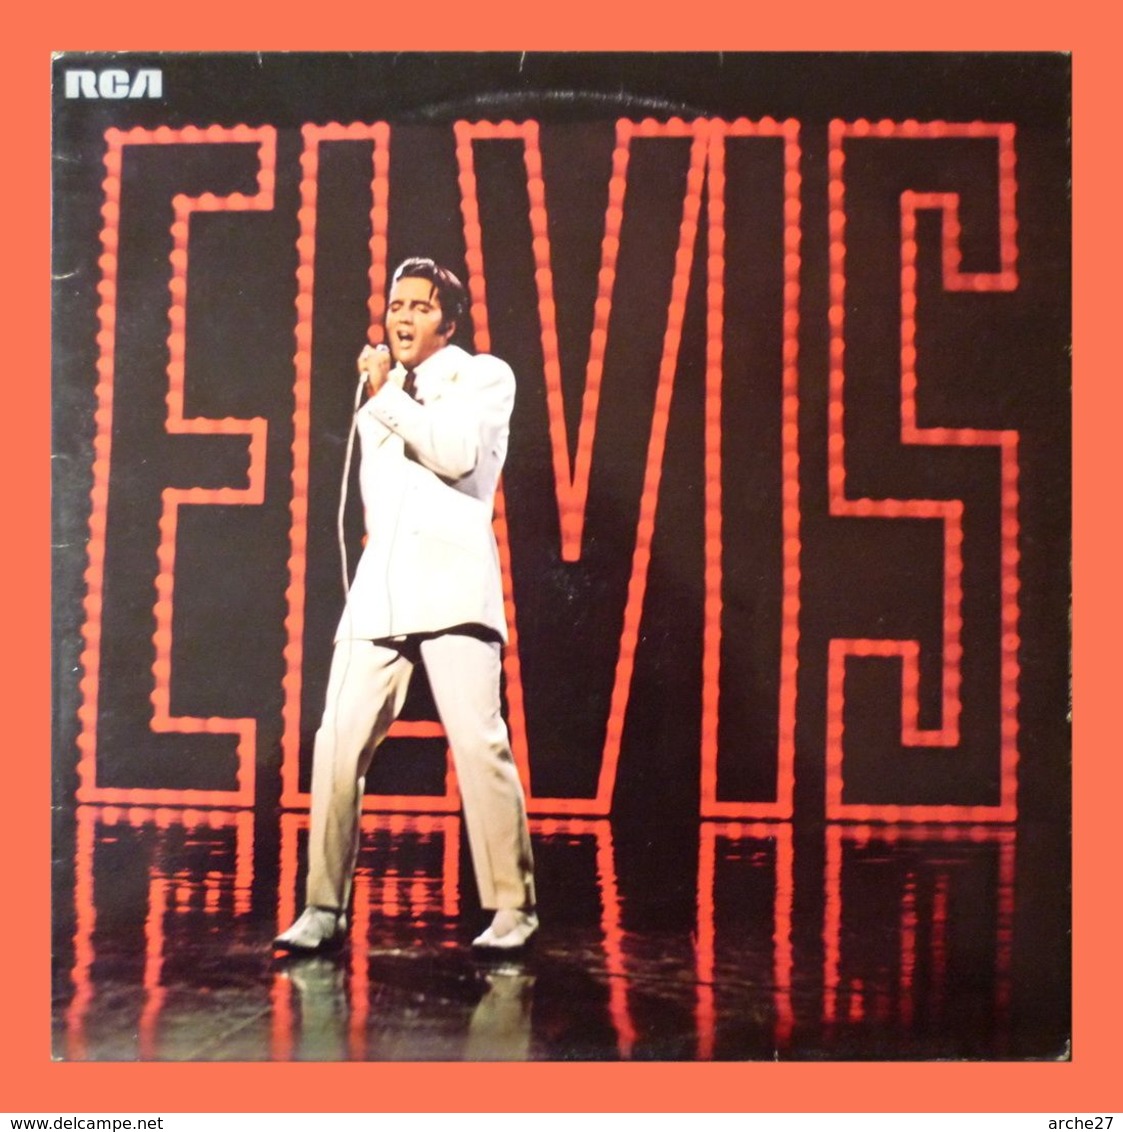 ELVIS PRESLEY - LP - 33T - Disque Vinyle - Trouble - 740579 - Rock